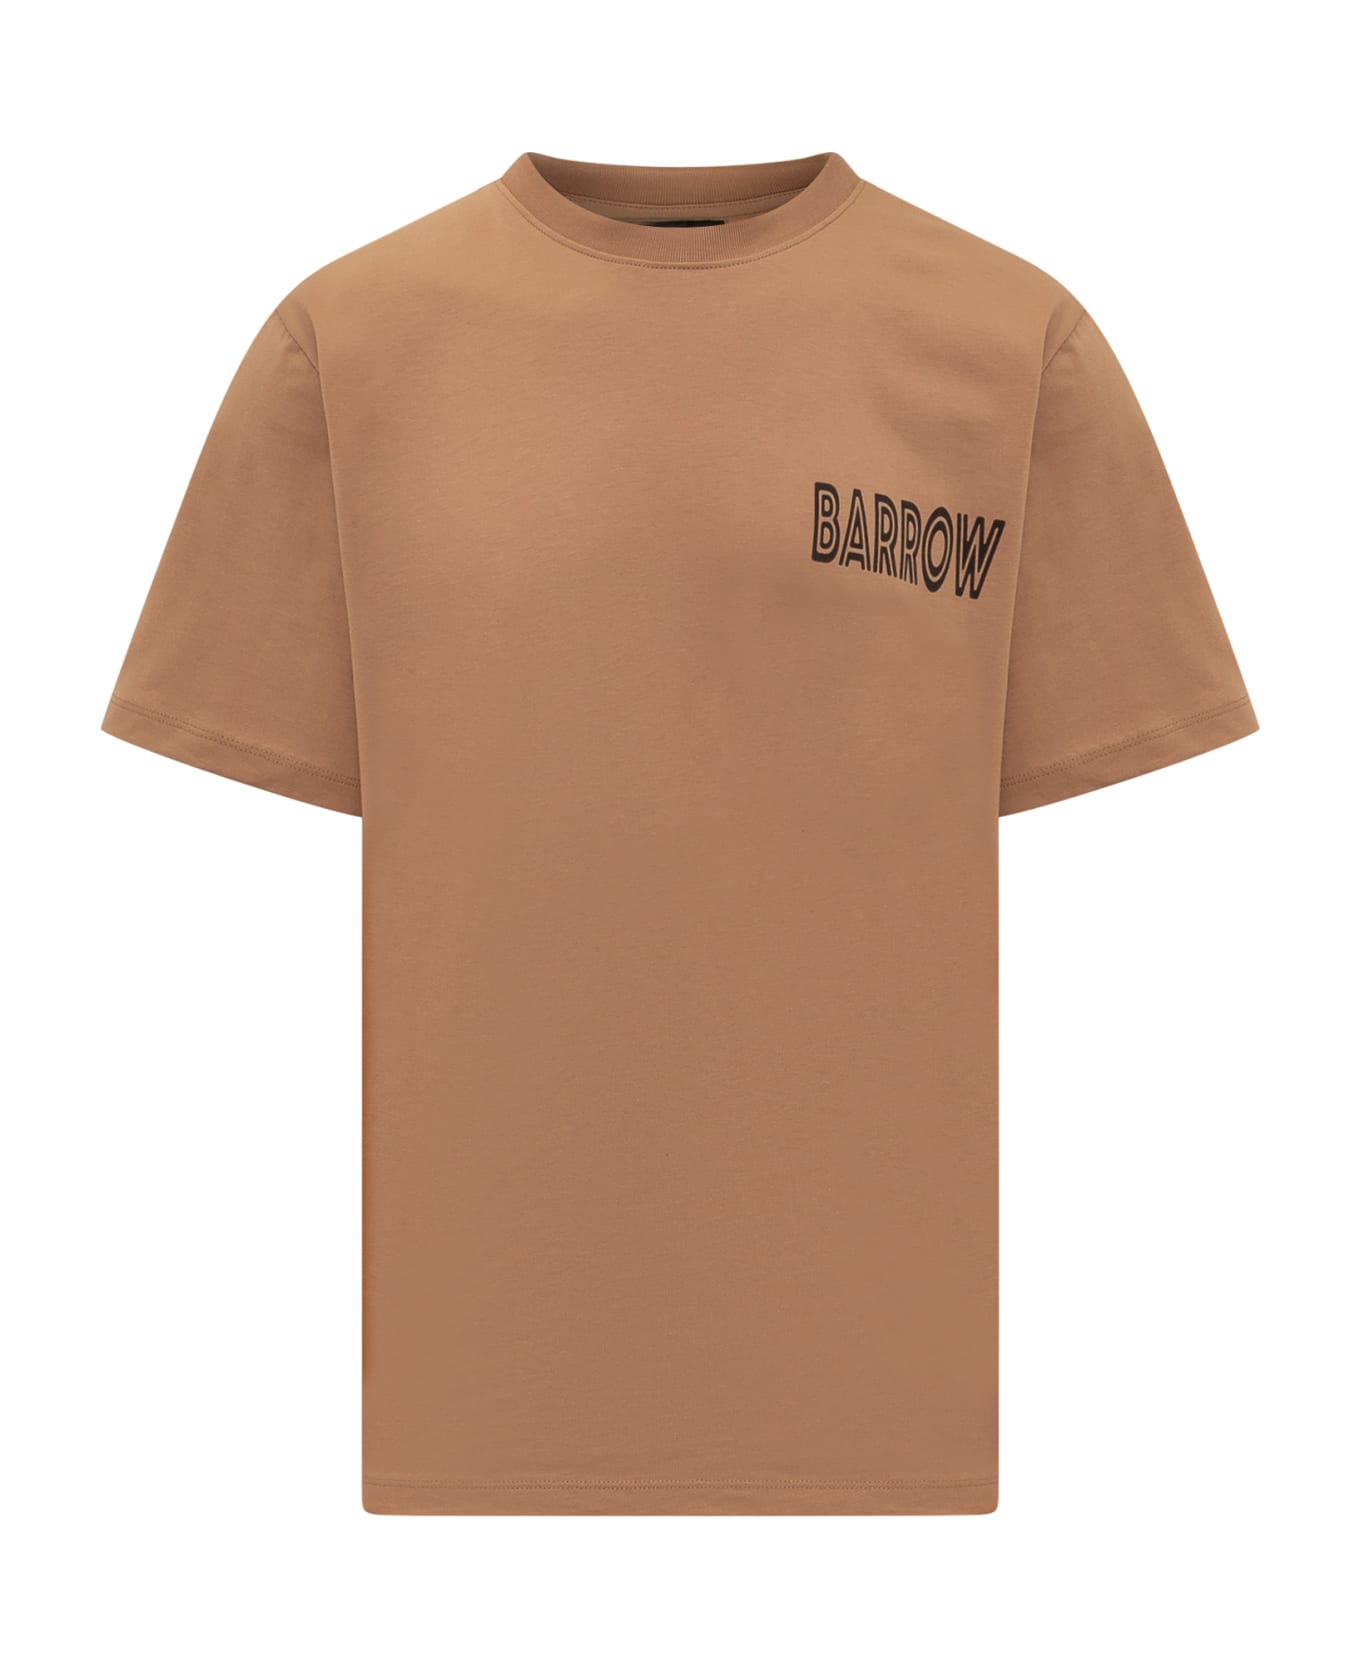 Barrow T-shirt - BURNT SAND